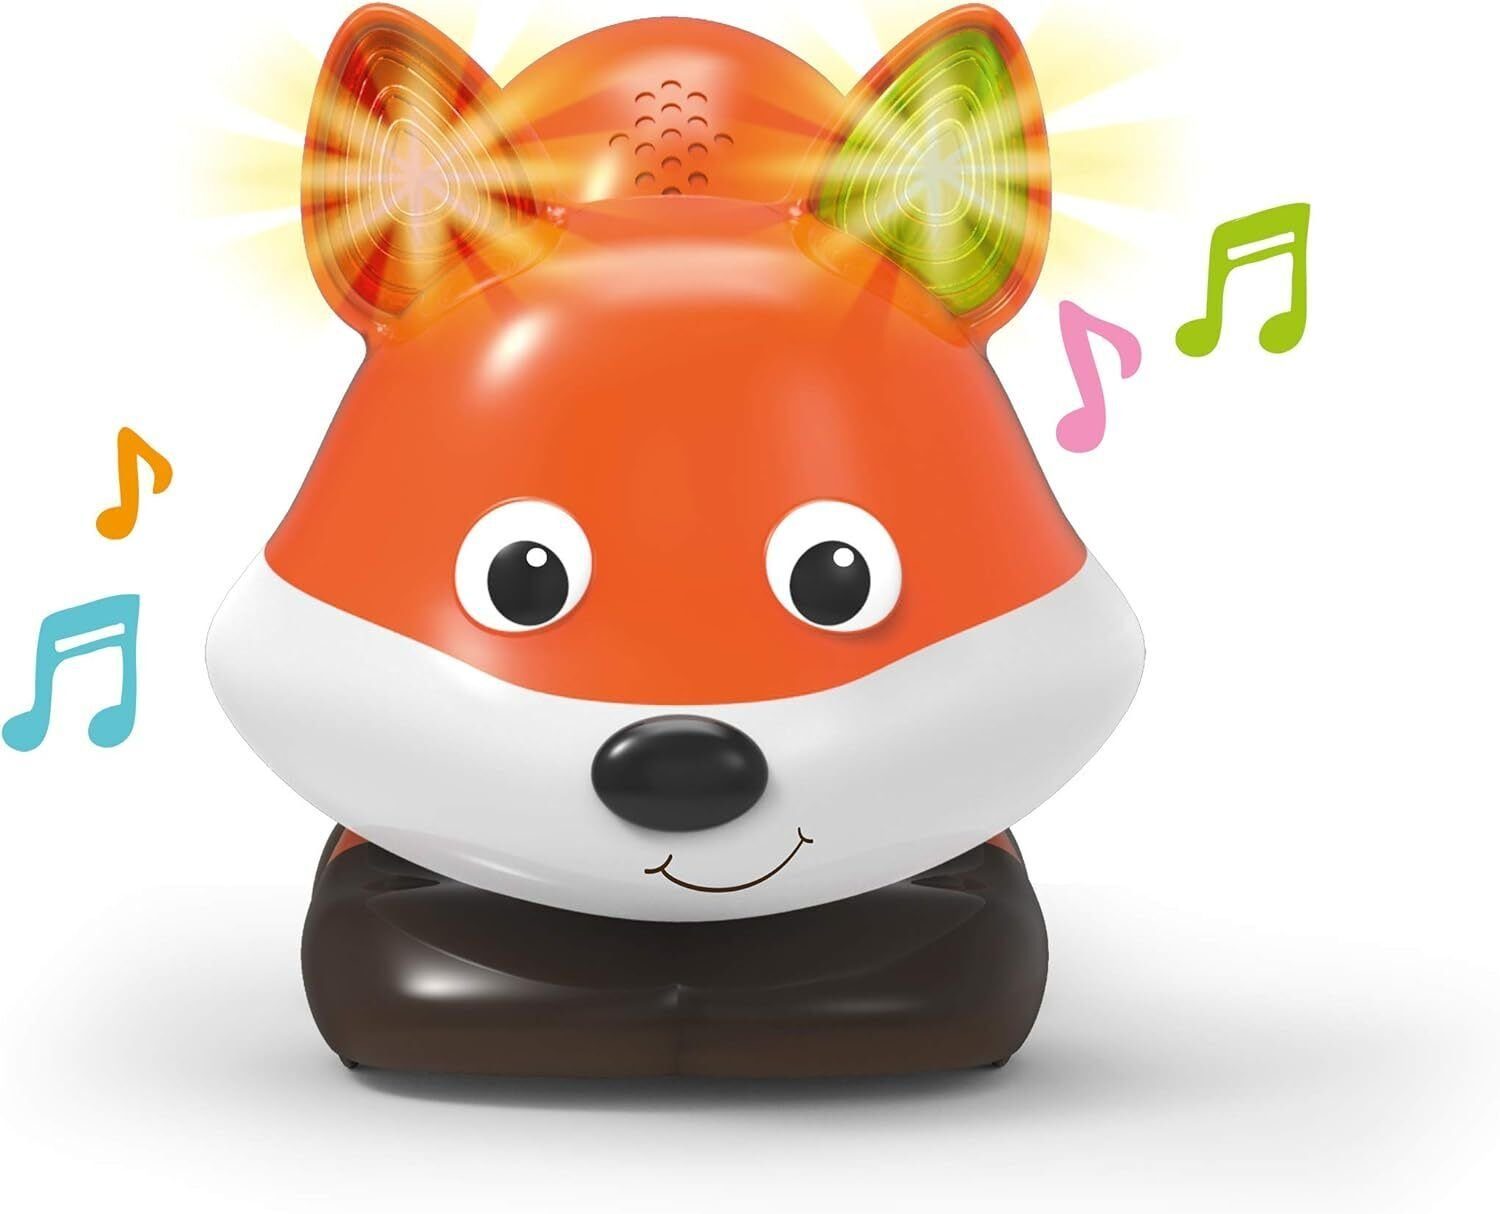 Smoby Lernspielzeug Smart Foxy Interaktives Іграшки Brettspiel 2 Spielmodi, 4 Räder und RFID-Technologie,4 verschiedenen Sprachen